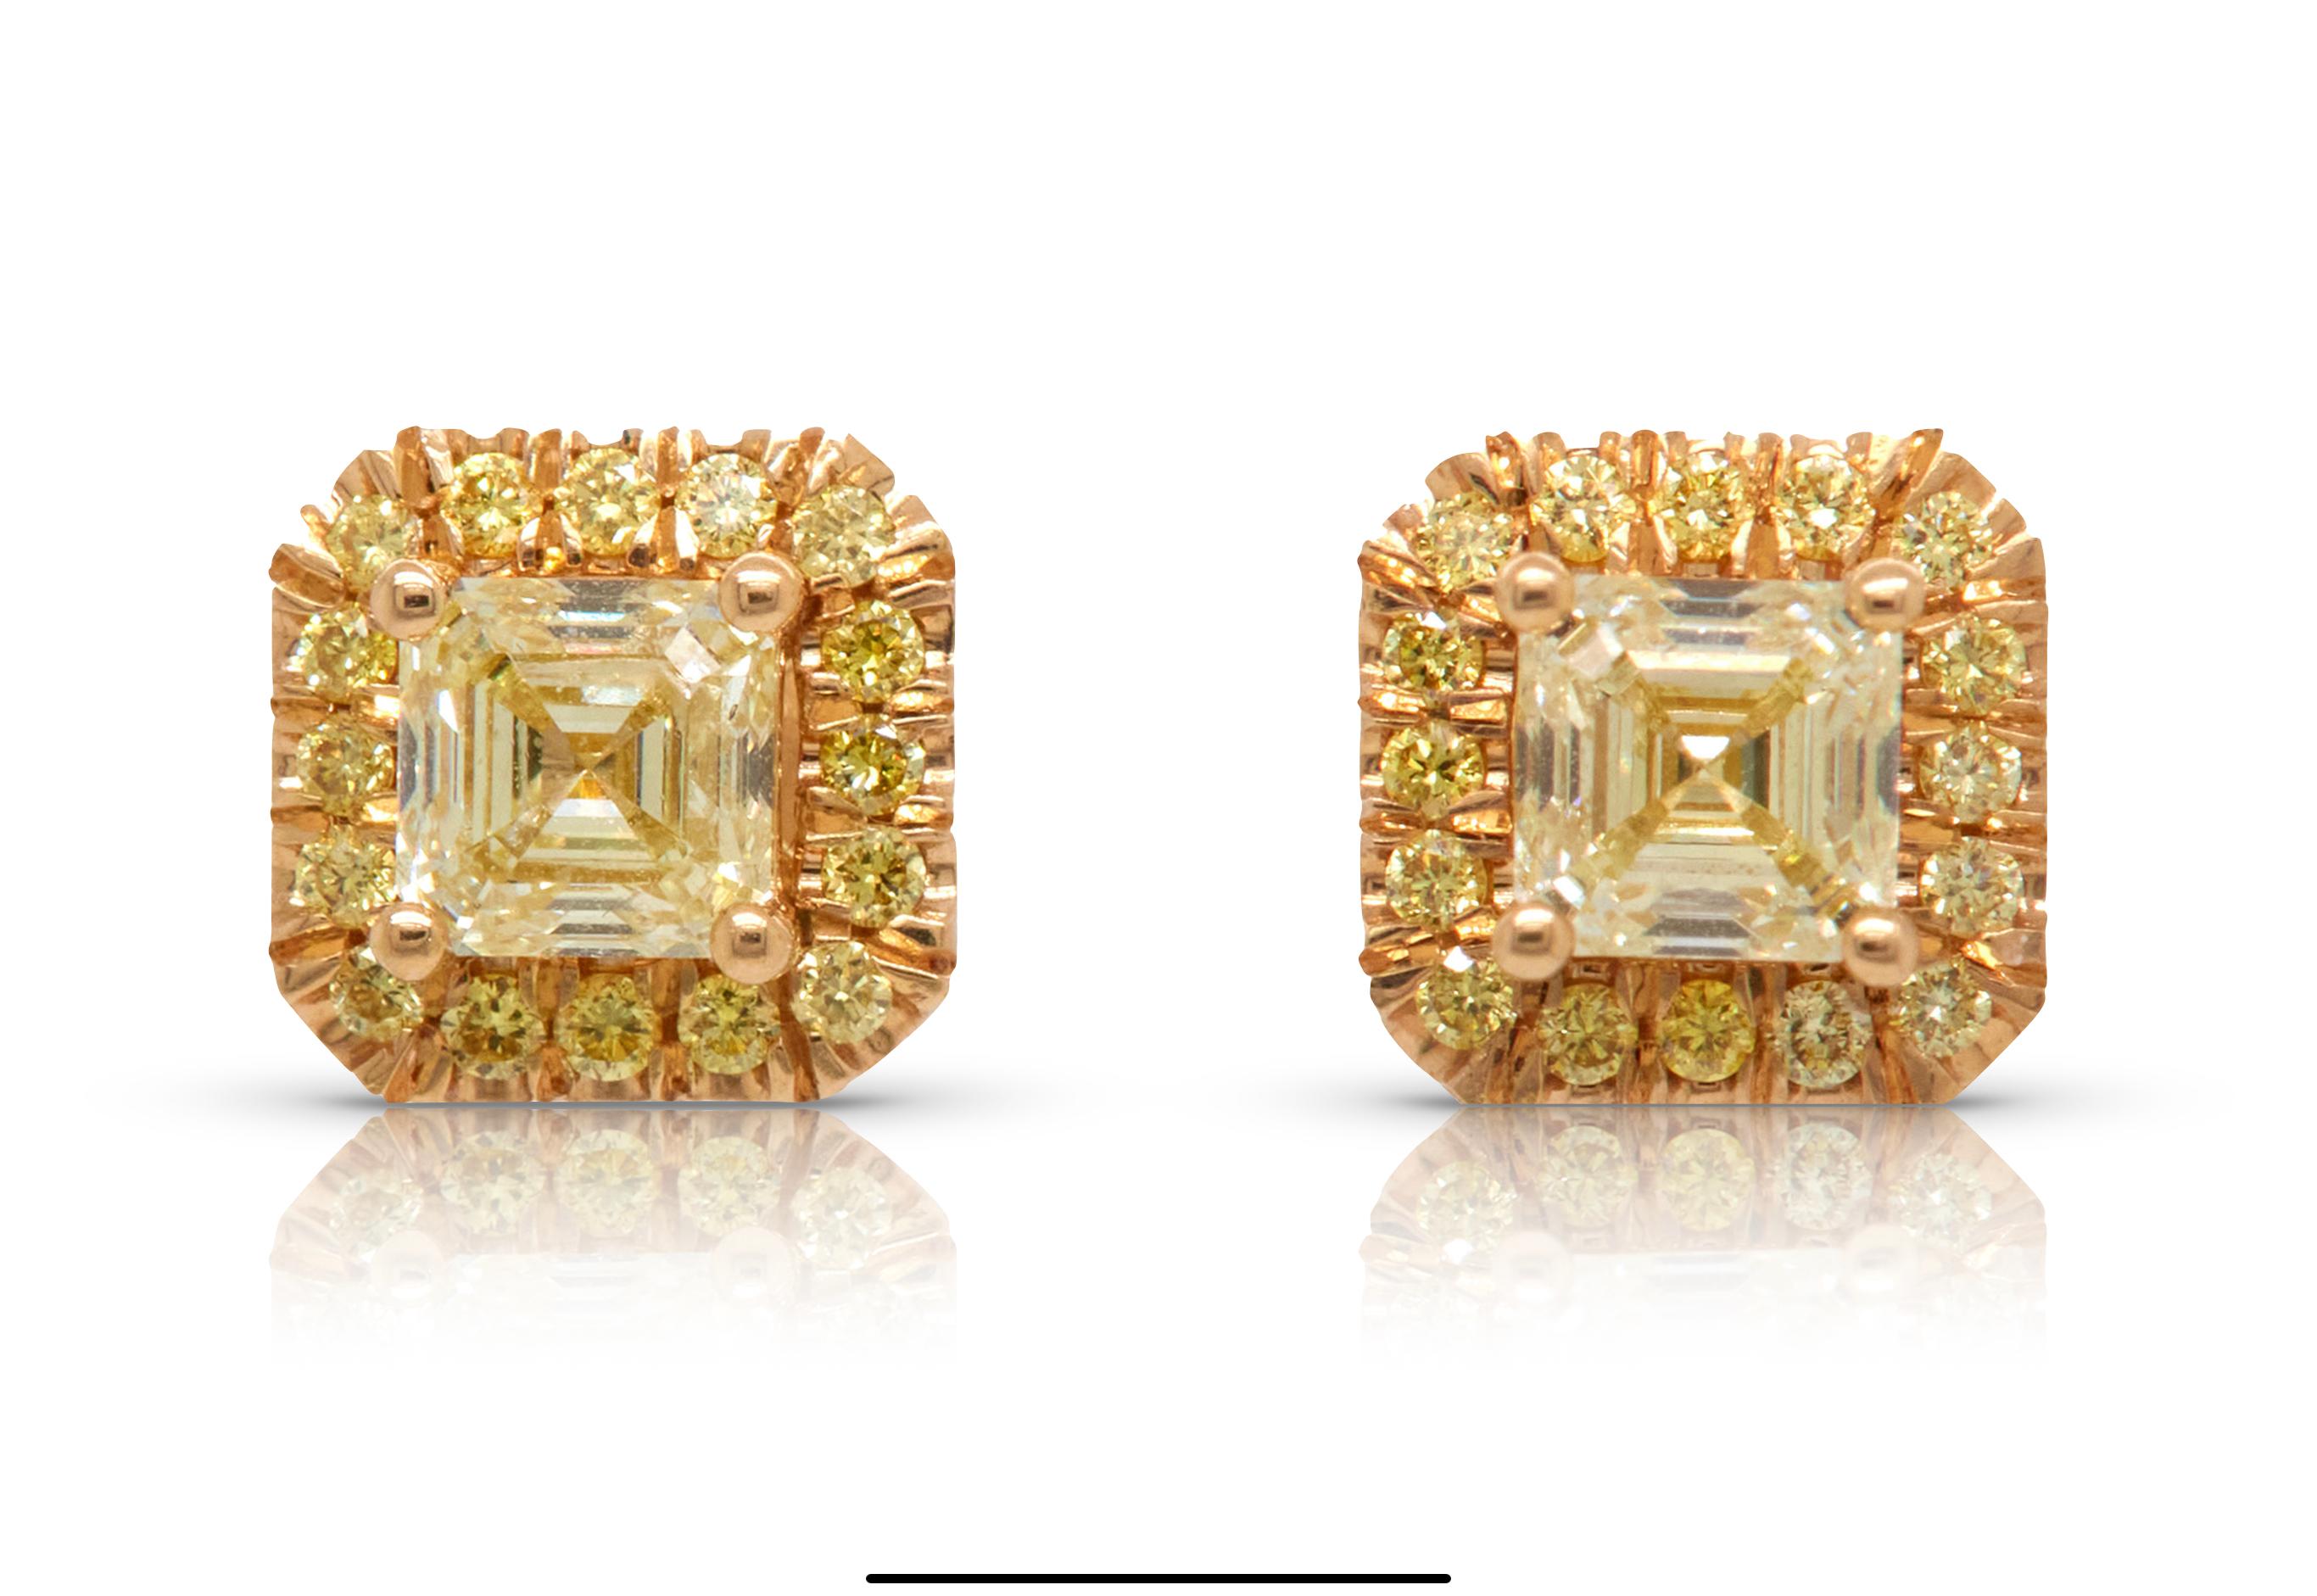 1,45 Karat intensiv gelbe Diamant-Ohrstecker. Diese wunderschönen Ohrringe bestehen aus einem Paar perfekt aufeinander abgestimmter gelber Diamanten im Asscher-Schliff mit einem Gewicht von 1,21 Karat in einem glamourösen gelben Diamant-Halo.
Diese